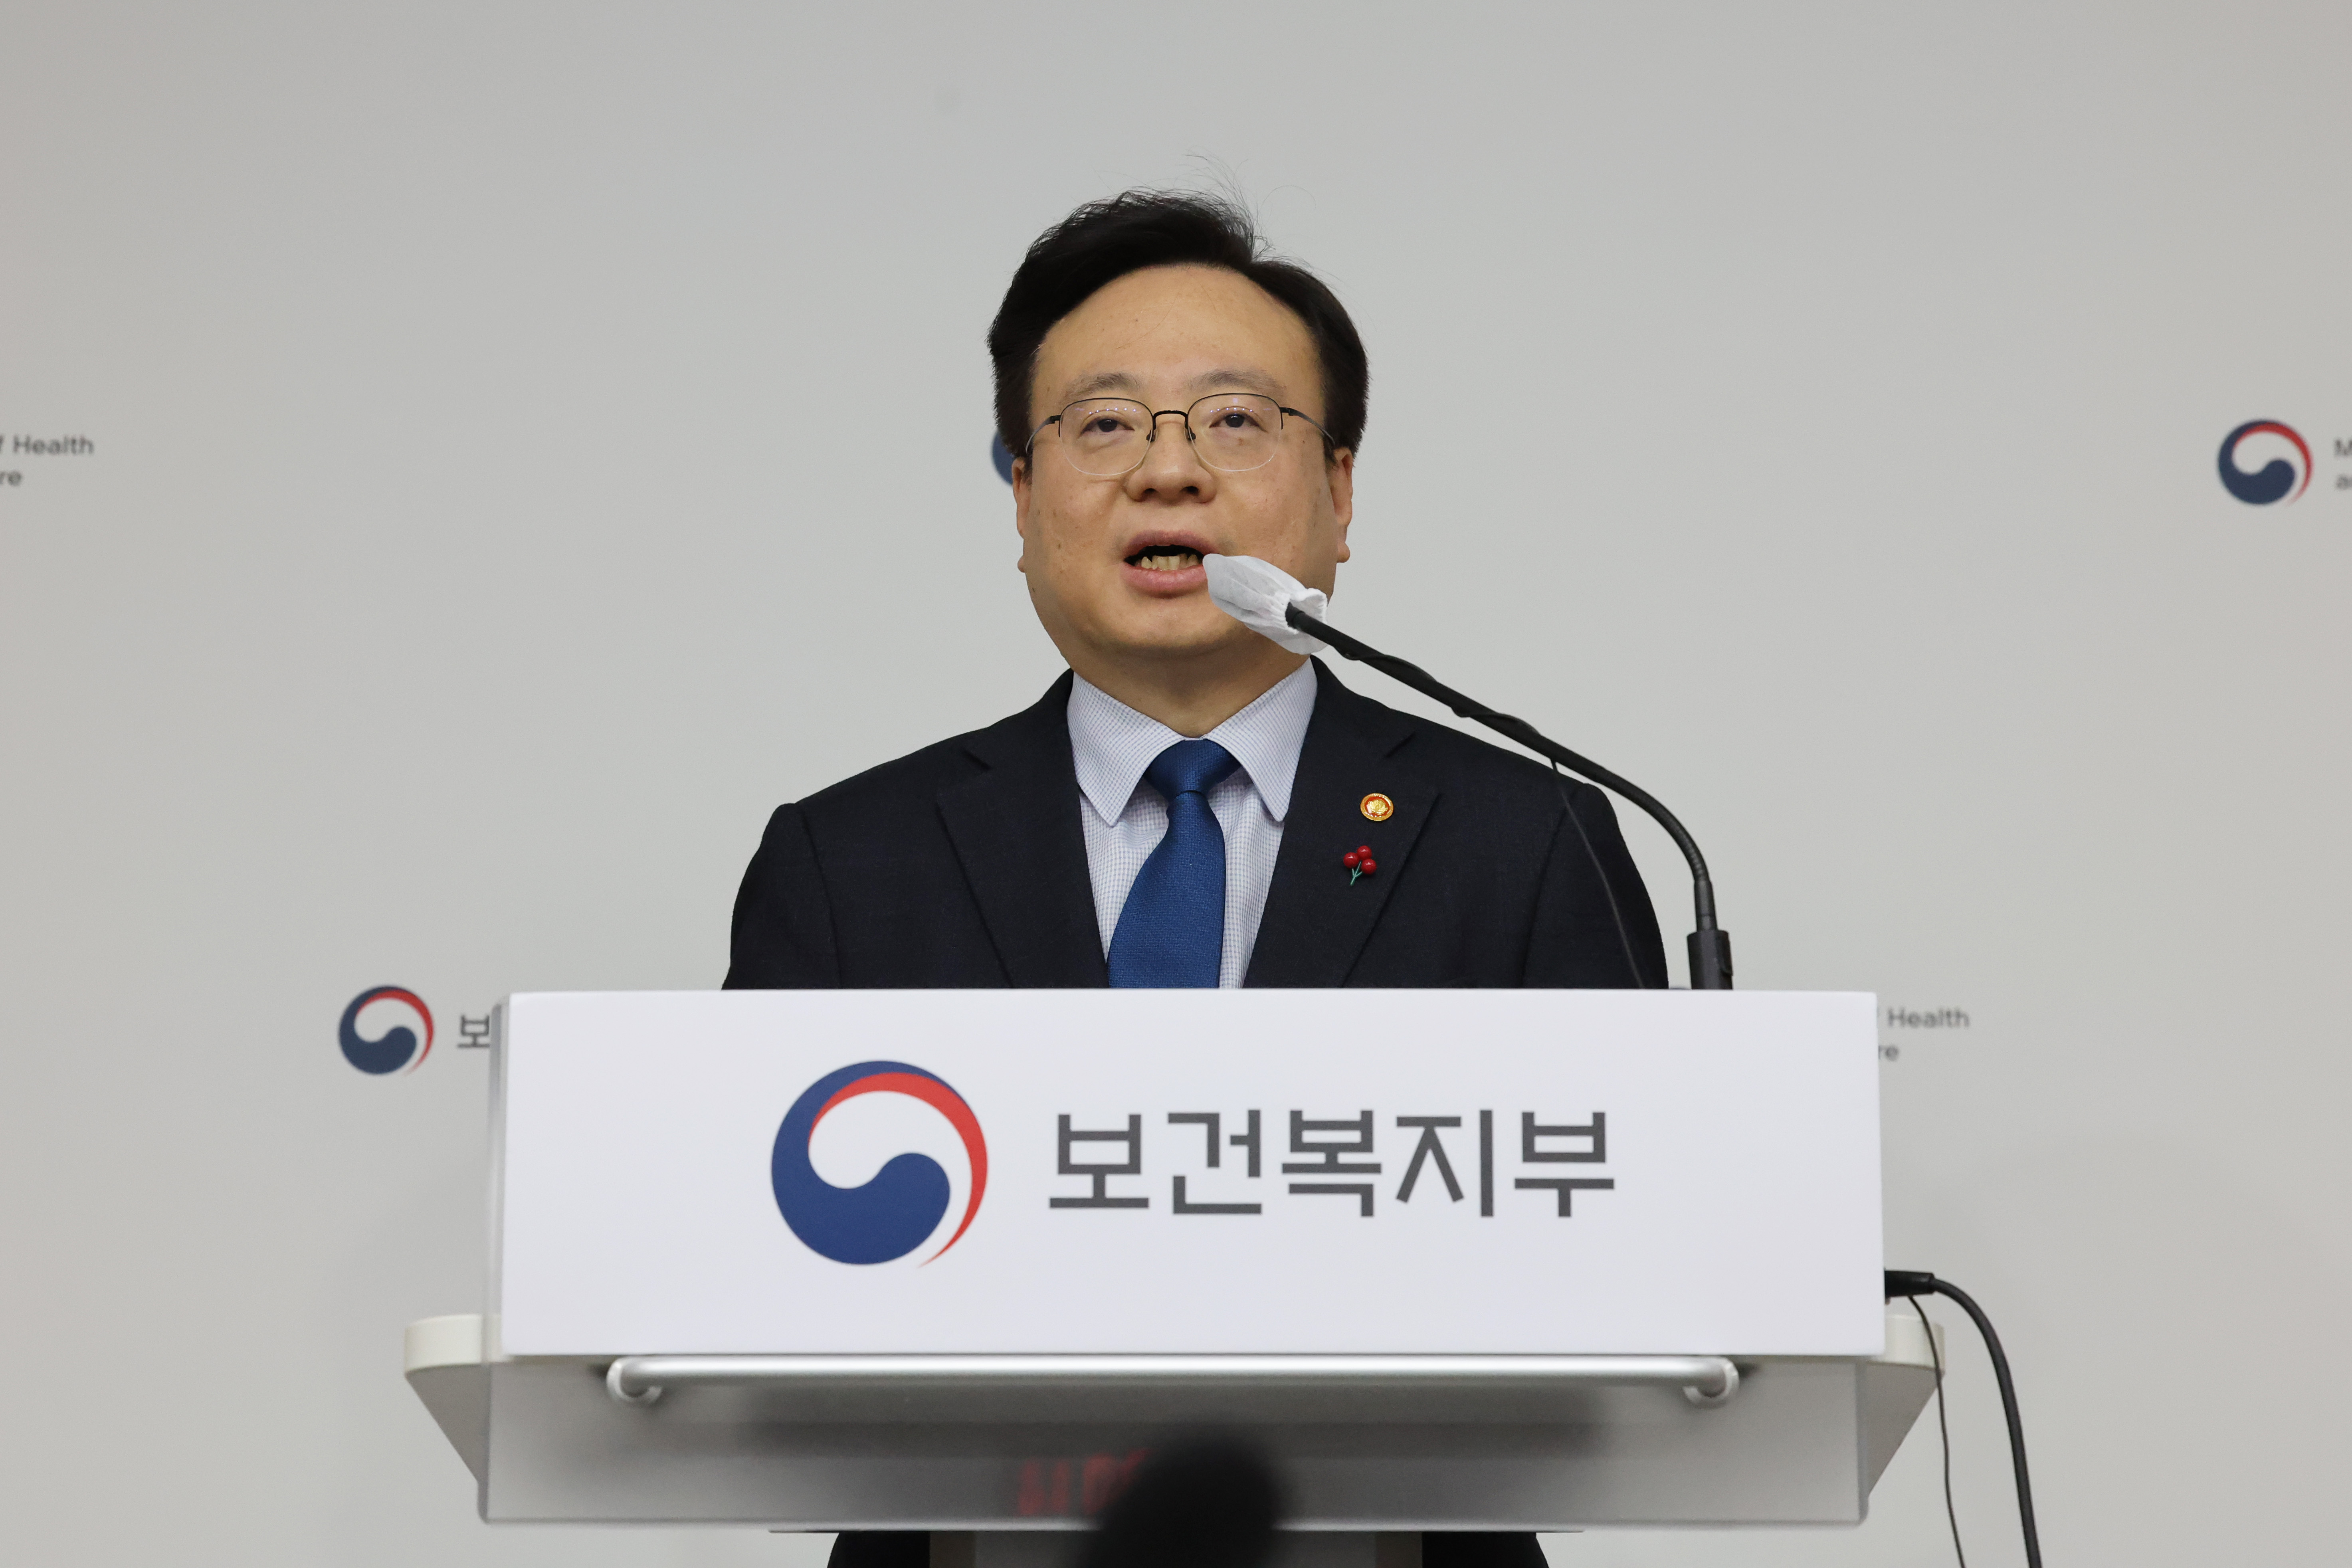 국민연금 보험료율 논의 관련 정부 입장 발표하는 조규홍 장관